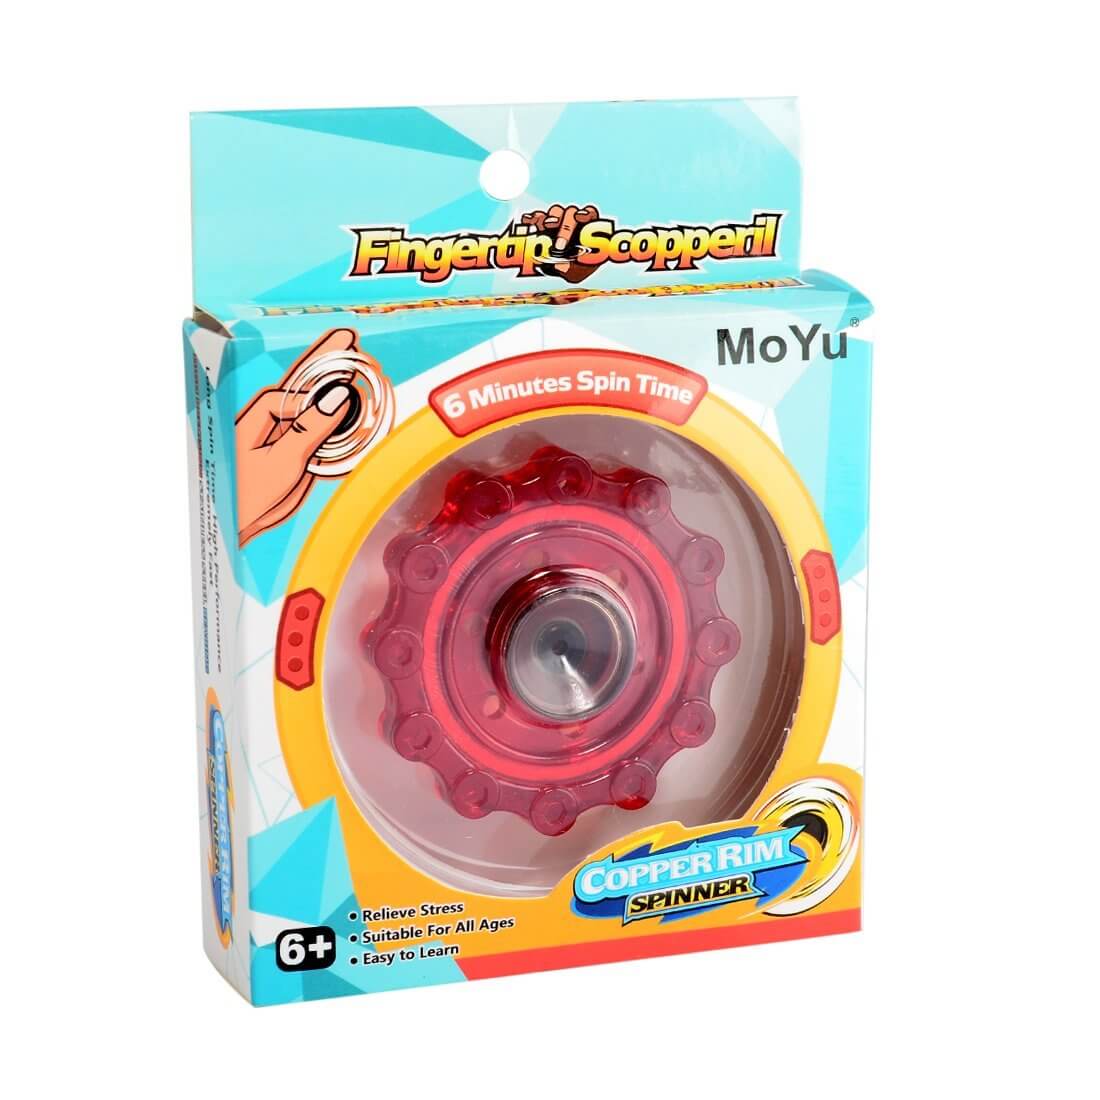 Moyu Copper Spiral Finger Spinner - Type Random